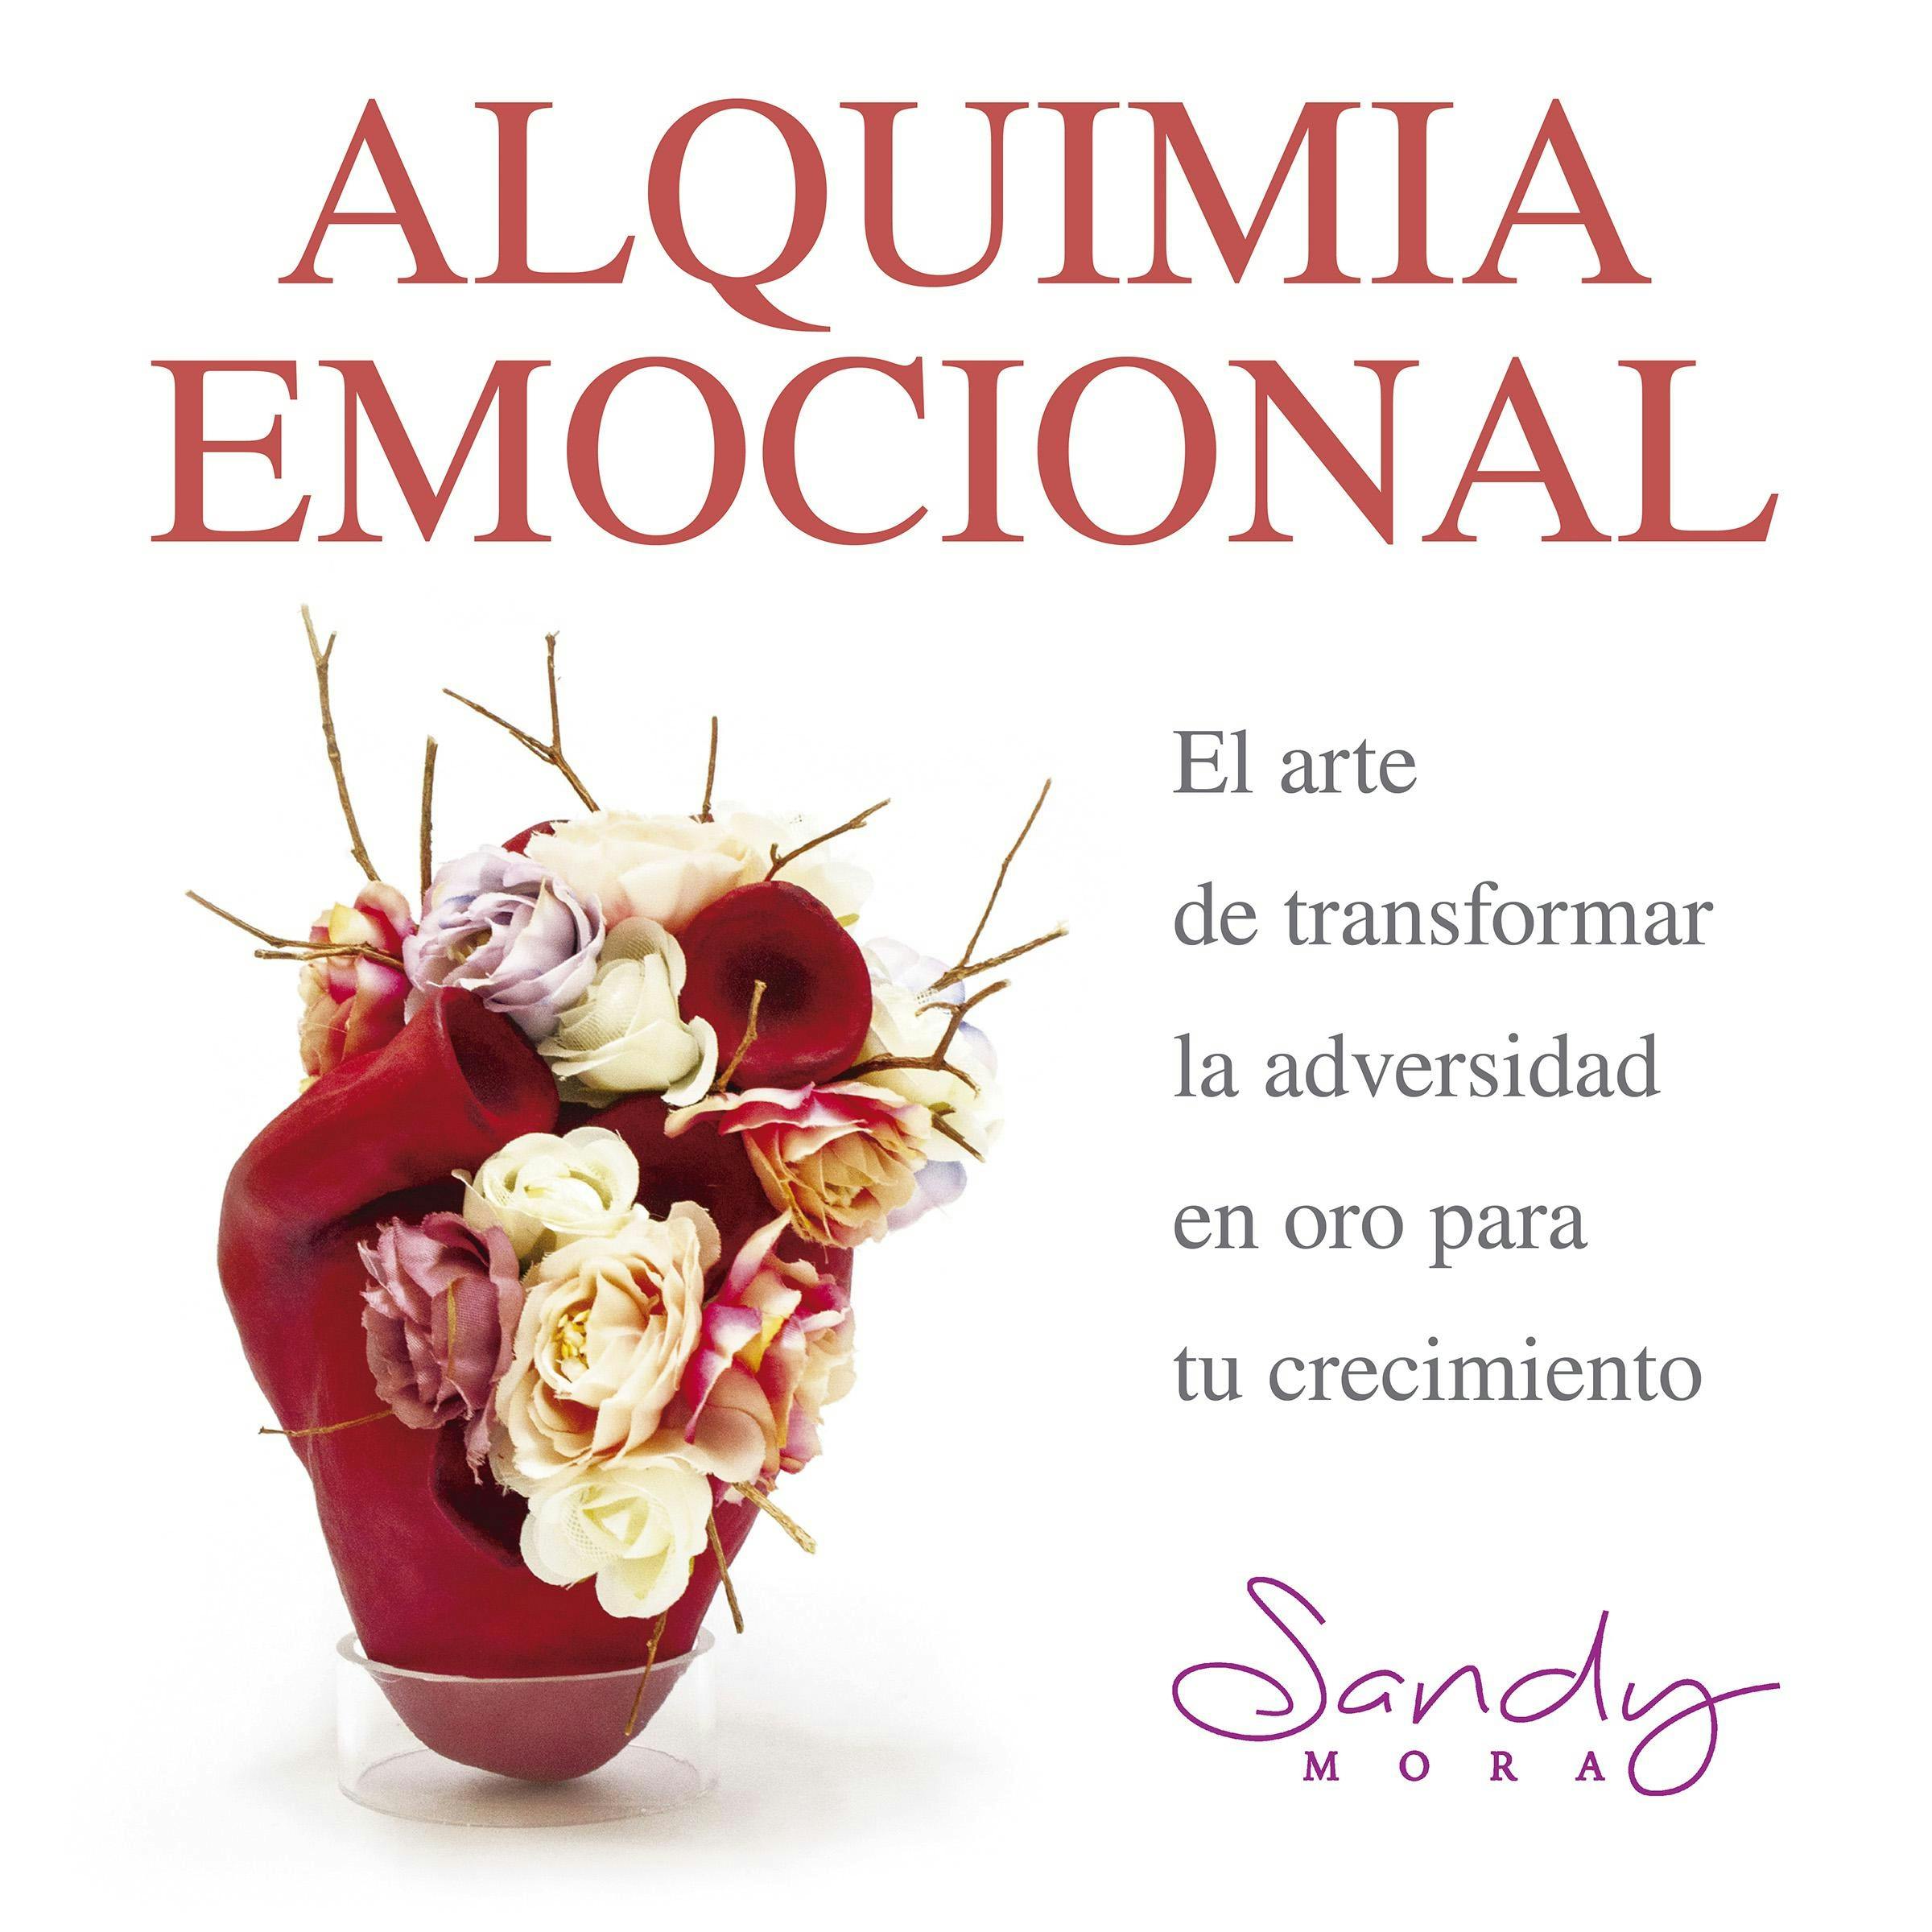 Alquimia Emocional, el arte de transformar la adversidad en oro para tu crecimiento. - Sandy Mora